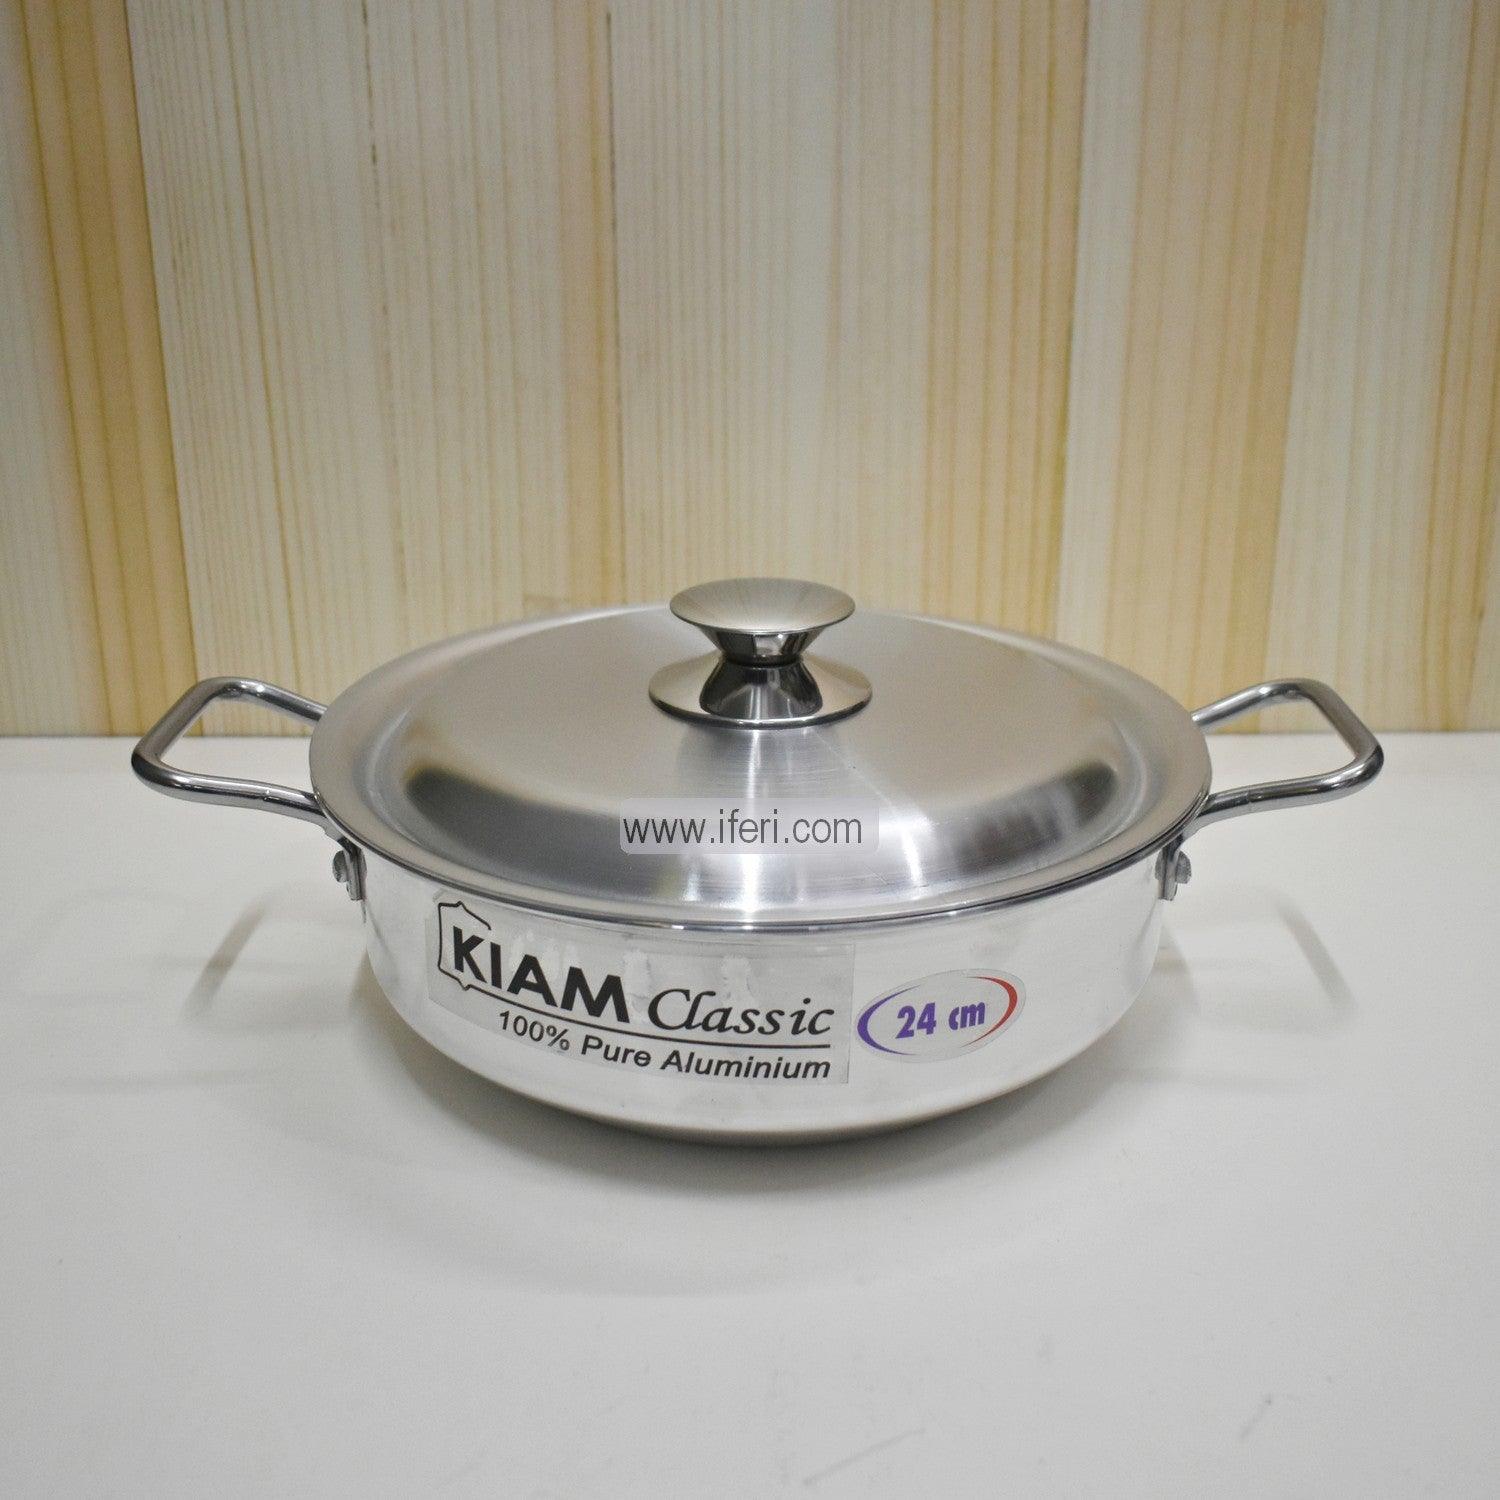 26 cm Kiam Aluminium Classic Korai Cookware With Aluminium Lid BCG0220 Price in Bangladesh - iferi.com